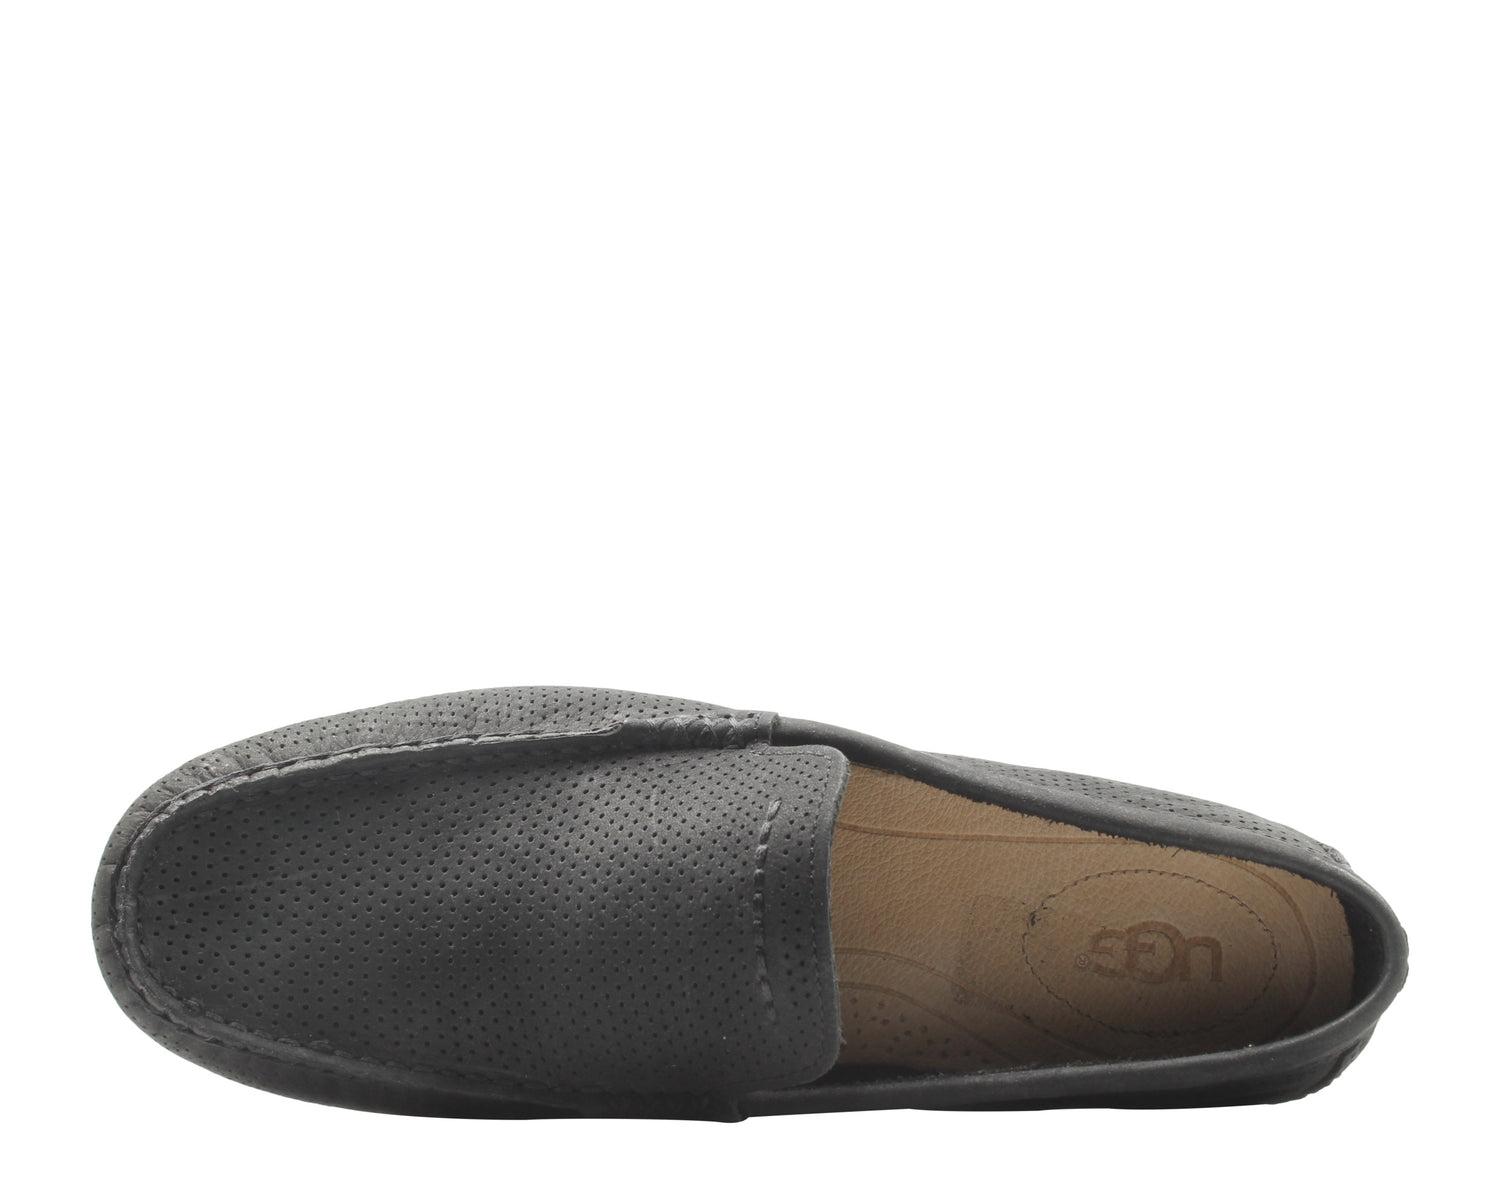 UGG Australia Henrick Perf Slip-On Men's Casual Shoes